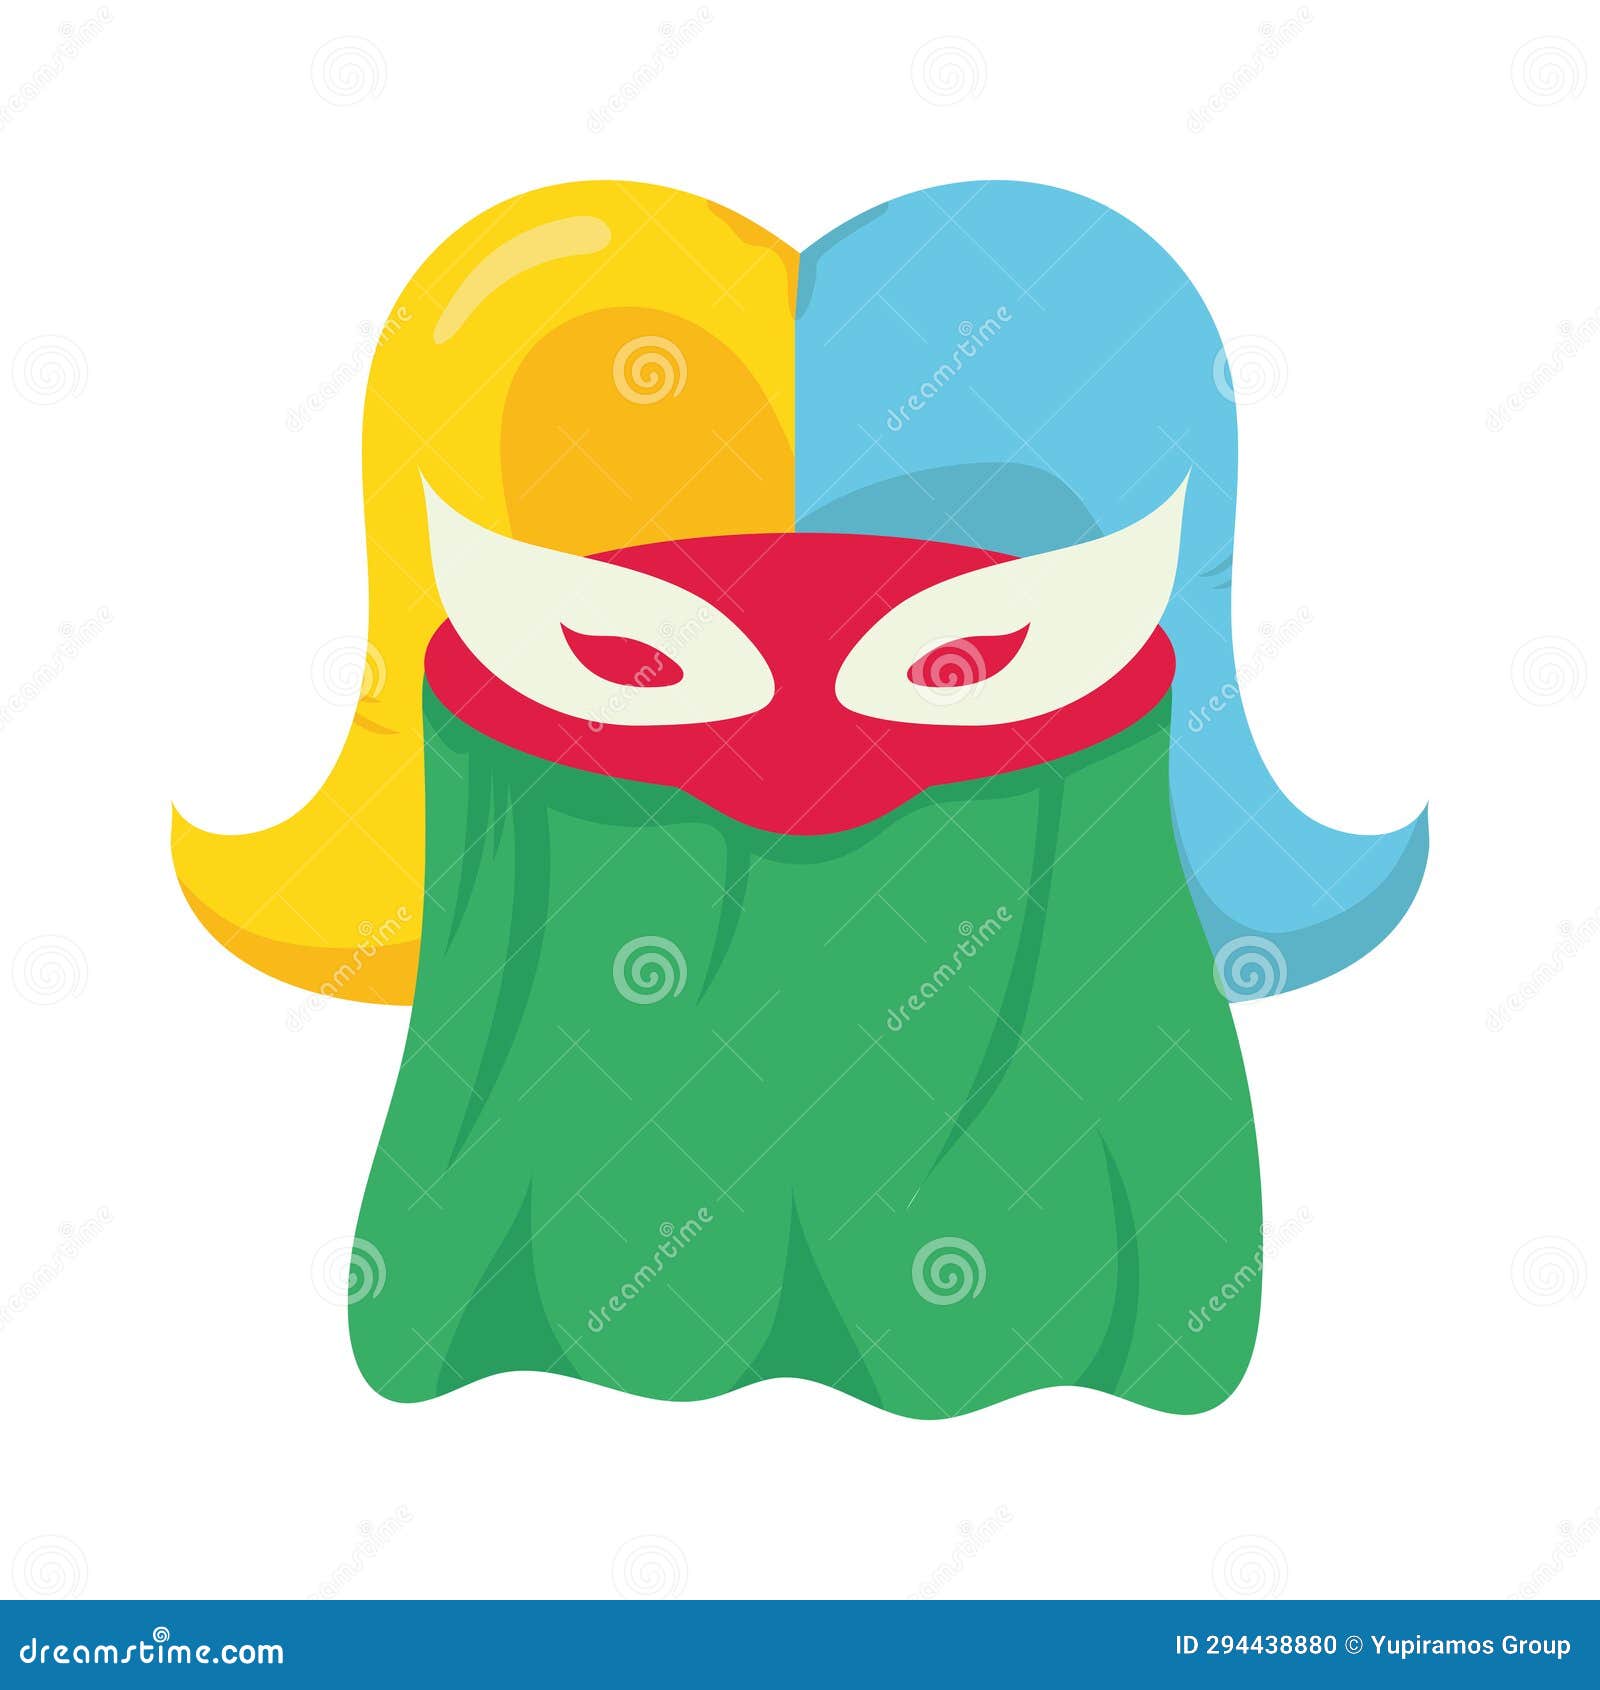 barranquilla carnival mask monocuco